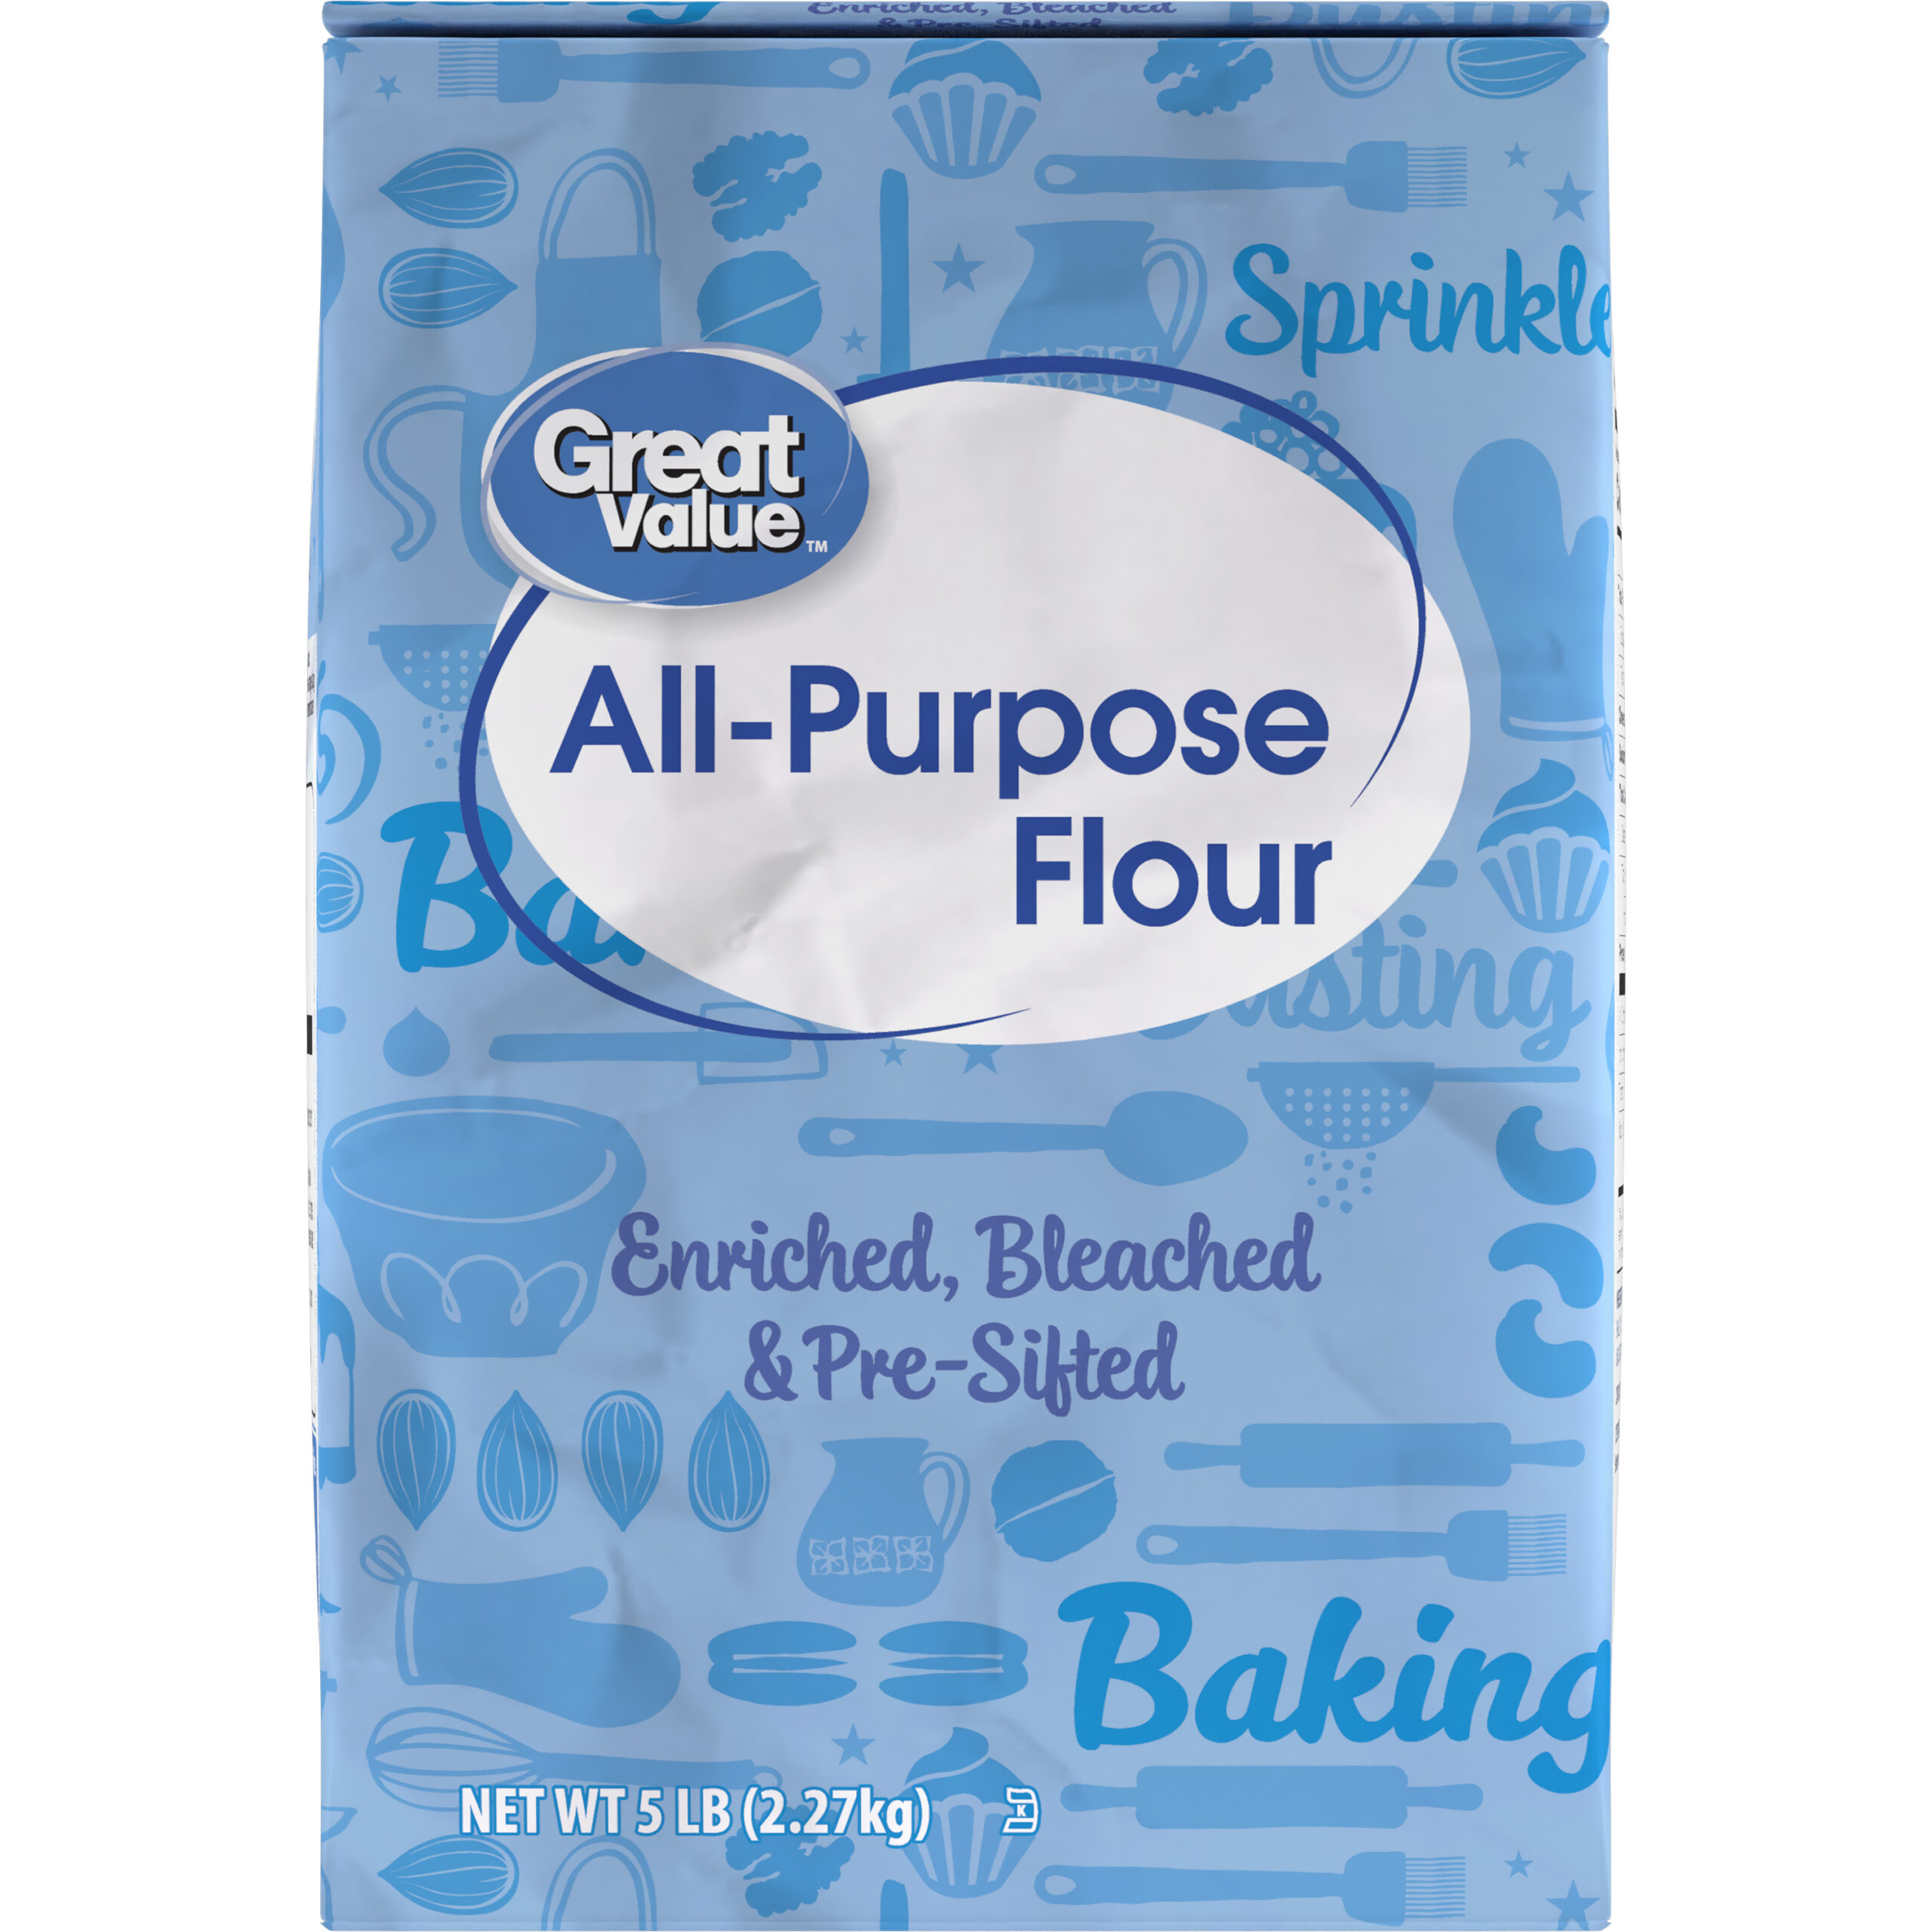 Great Value All-Purpose Flour, 5LB Bag - Walmart.com